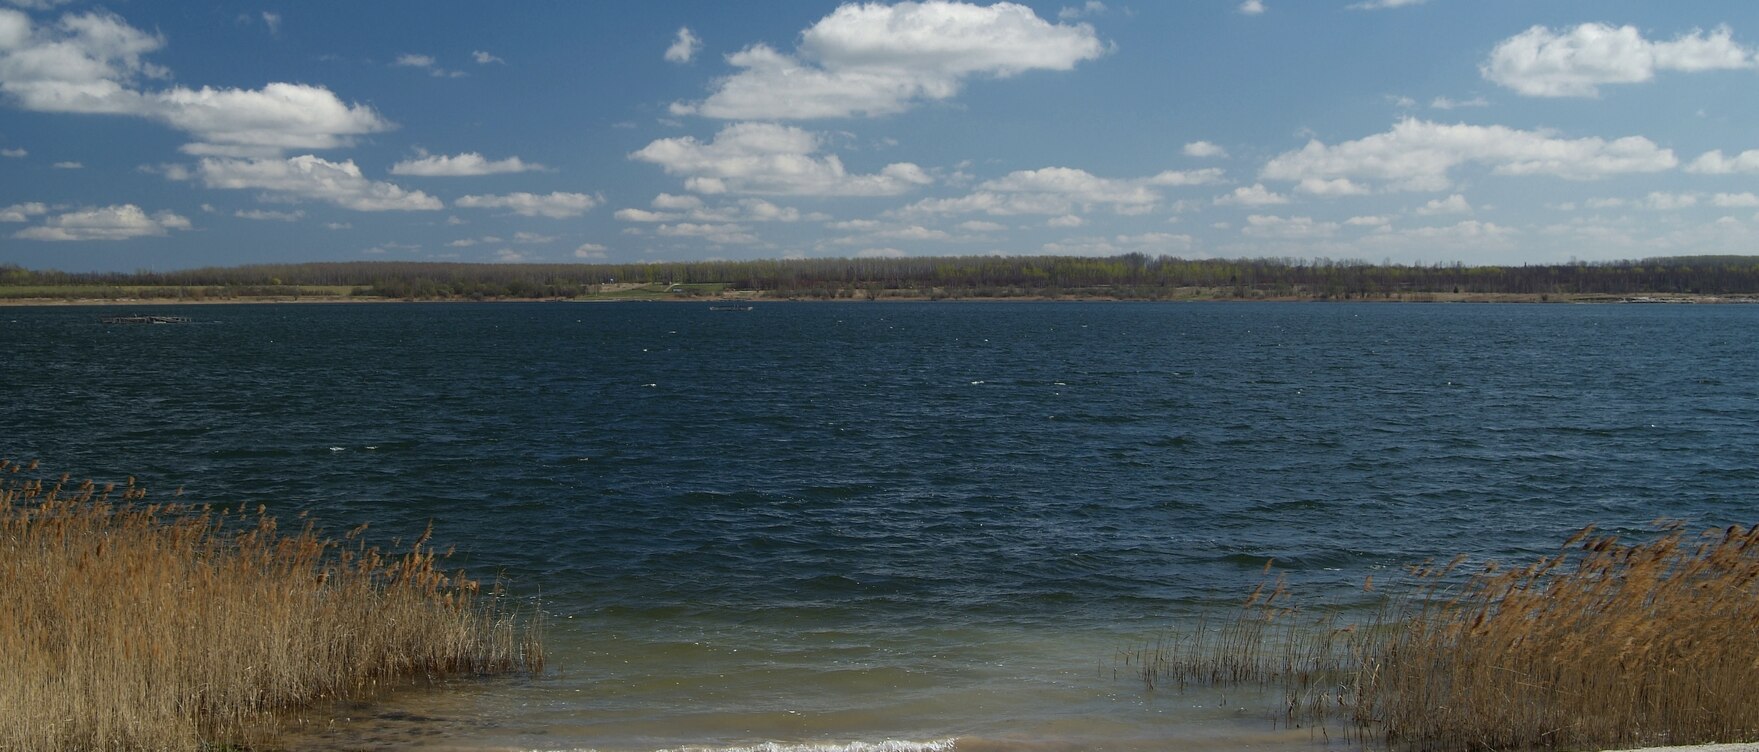 Wellen stoßen an das sandige Ufer eines Sees mit Gräsern an der linken Seite